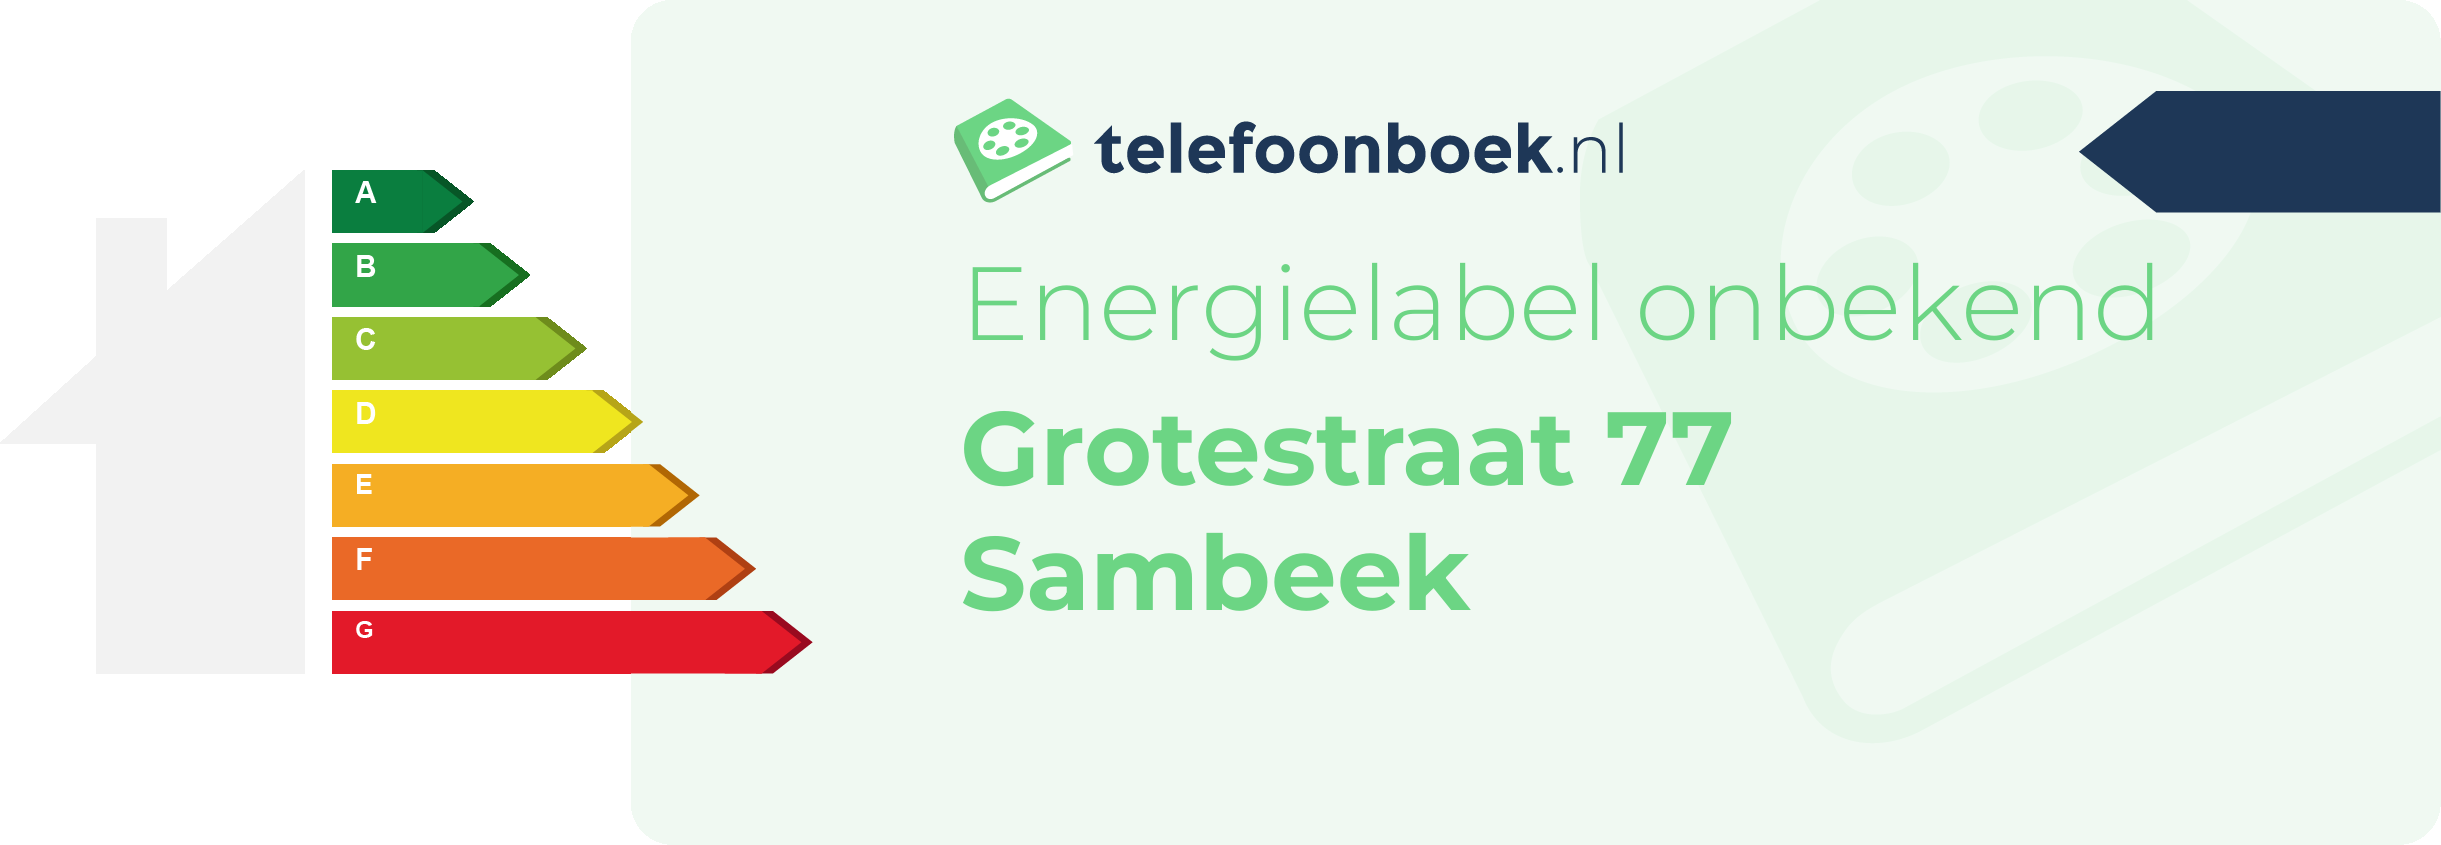 Energielabel Grotestraat 77 Sambeek